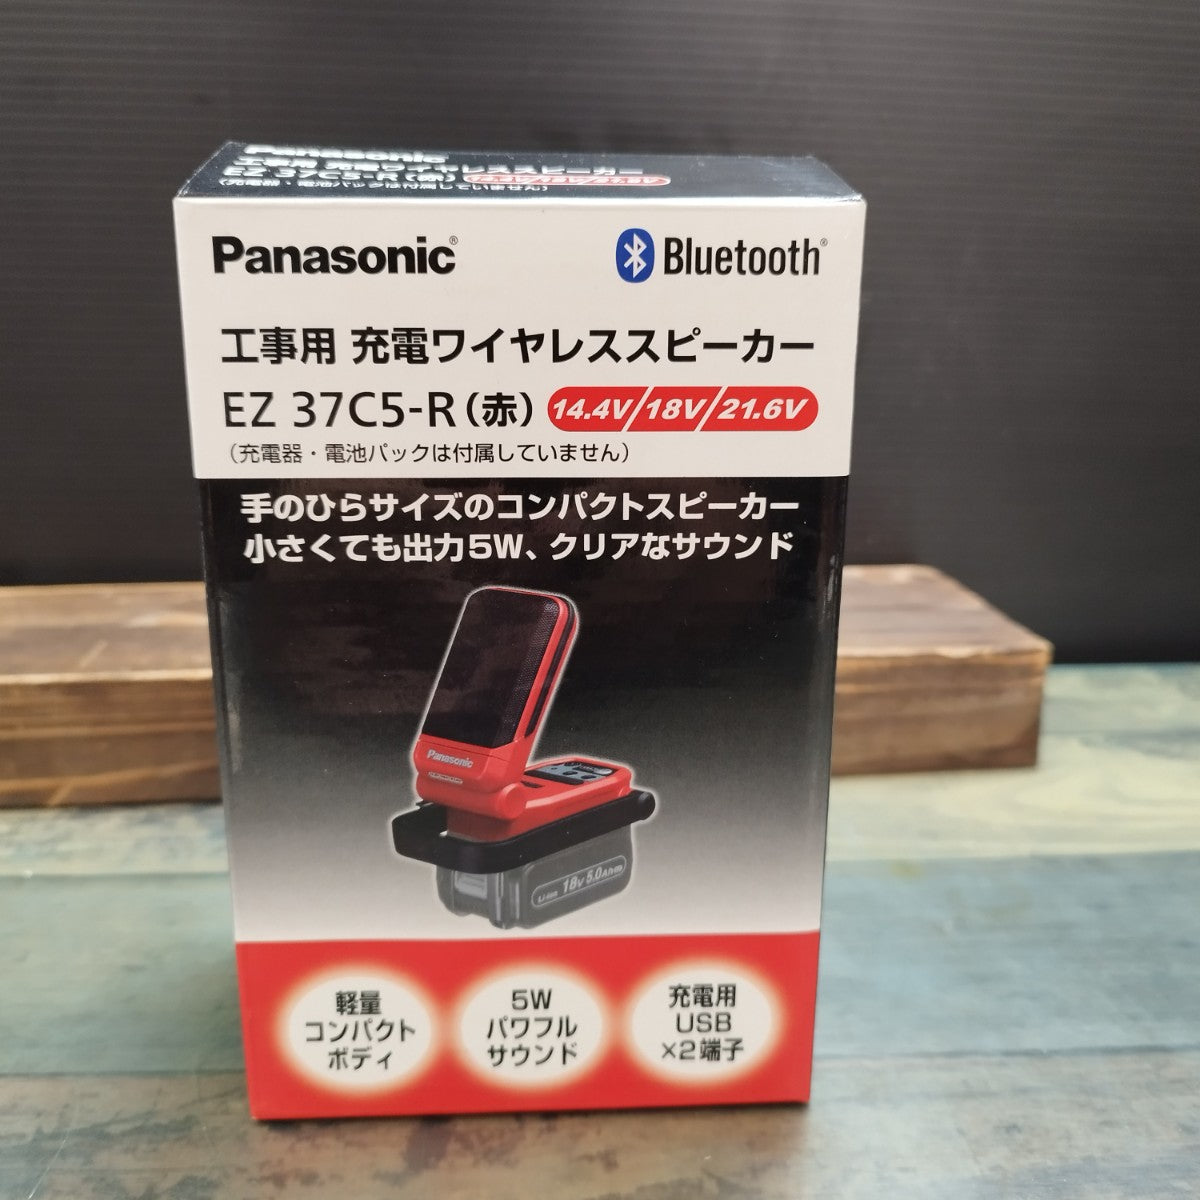 パナソニック EZ37C5-R 赤 bluetoothコンパクトワイヤレススピーカー